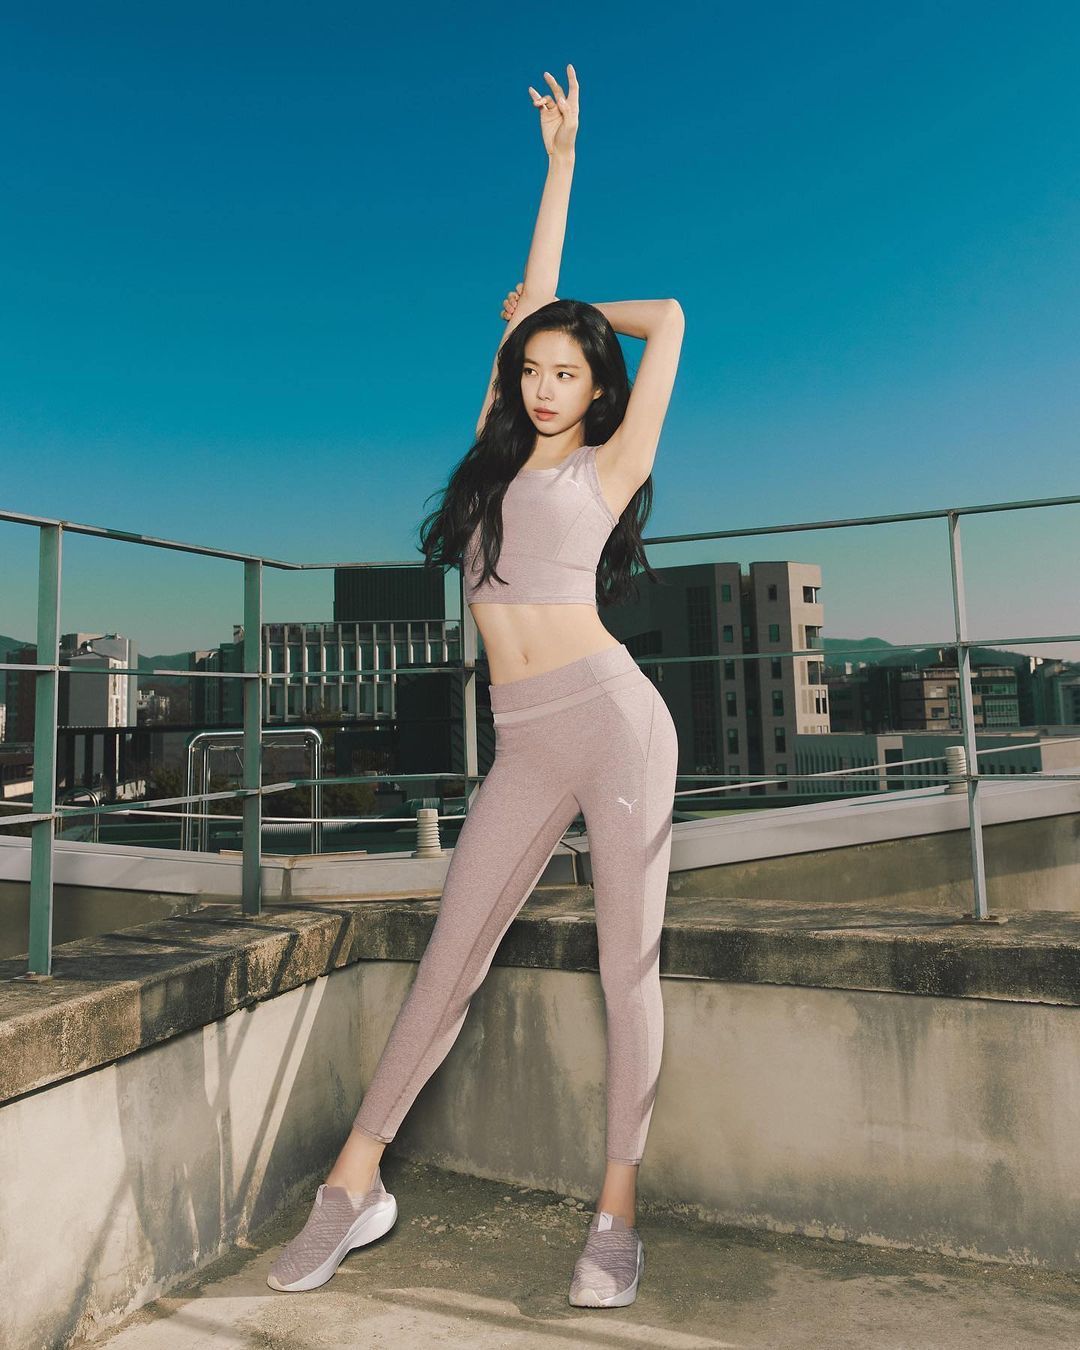 Deretan Idol Korea yang Jadi Model Brand Pakaian Olahraga